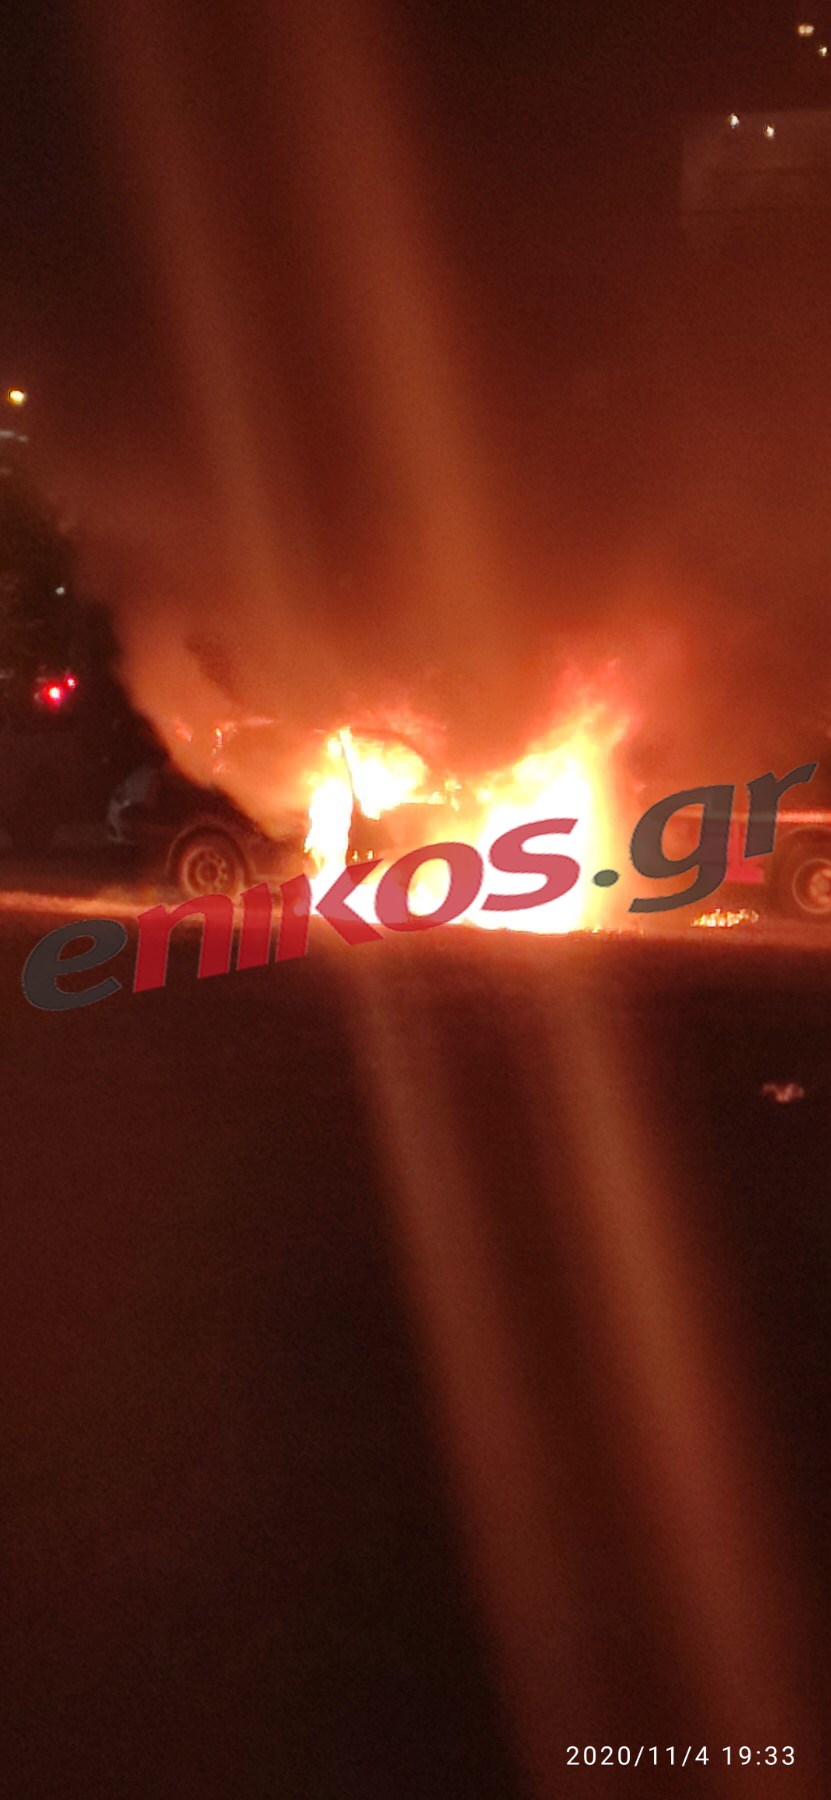 Θεσσαλονίκη: Φωτιά σε αυτοκίνητο στην Καλαμαριά - Ένας τραυματίας - ΦΩΤΟ - ΒΙΝΤΕΟ